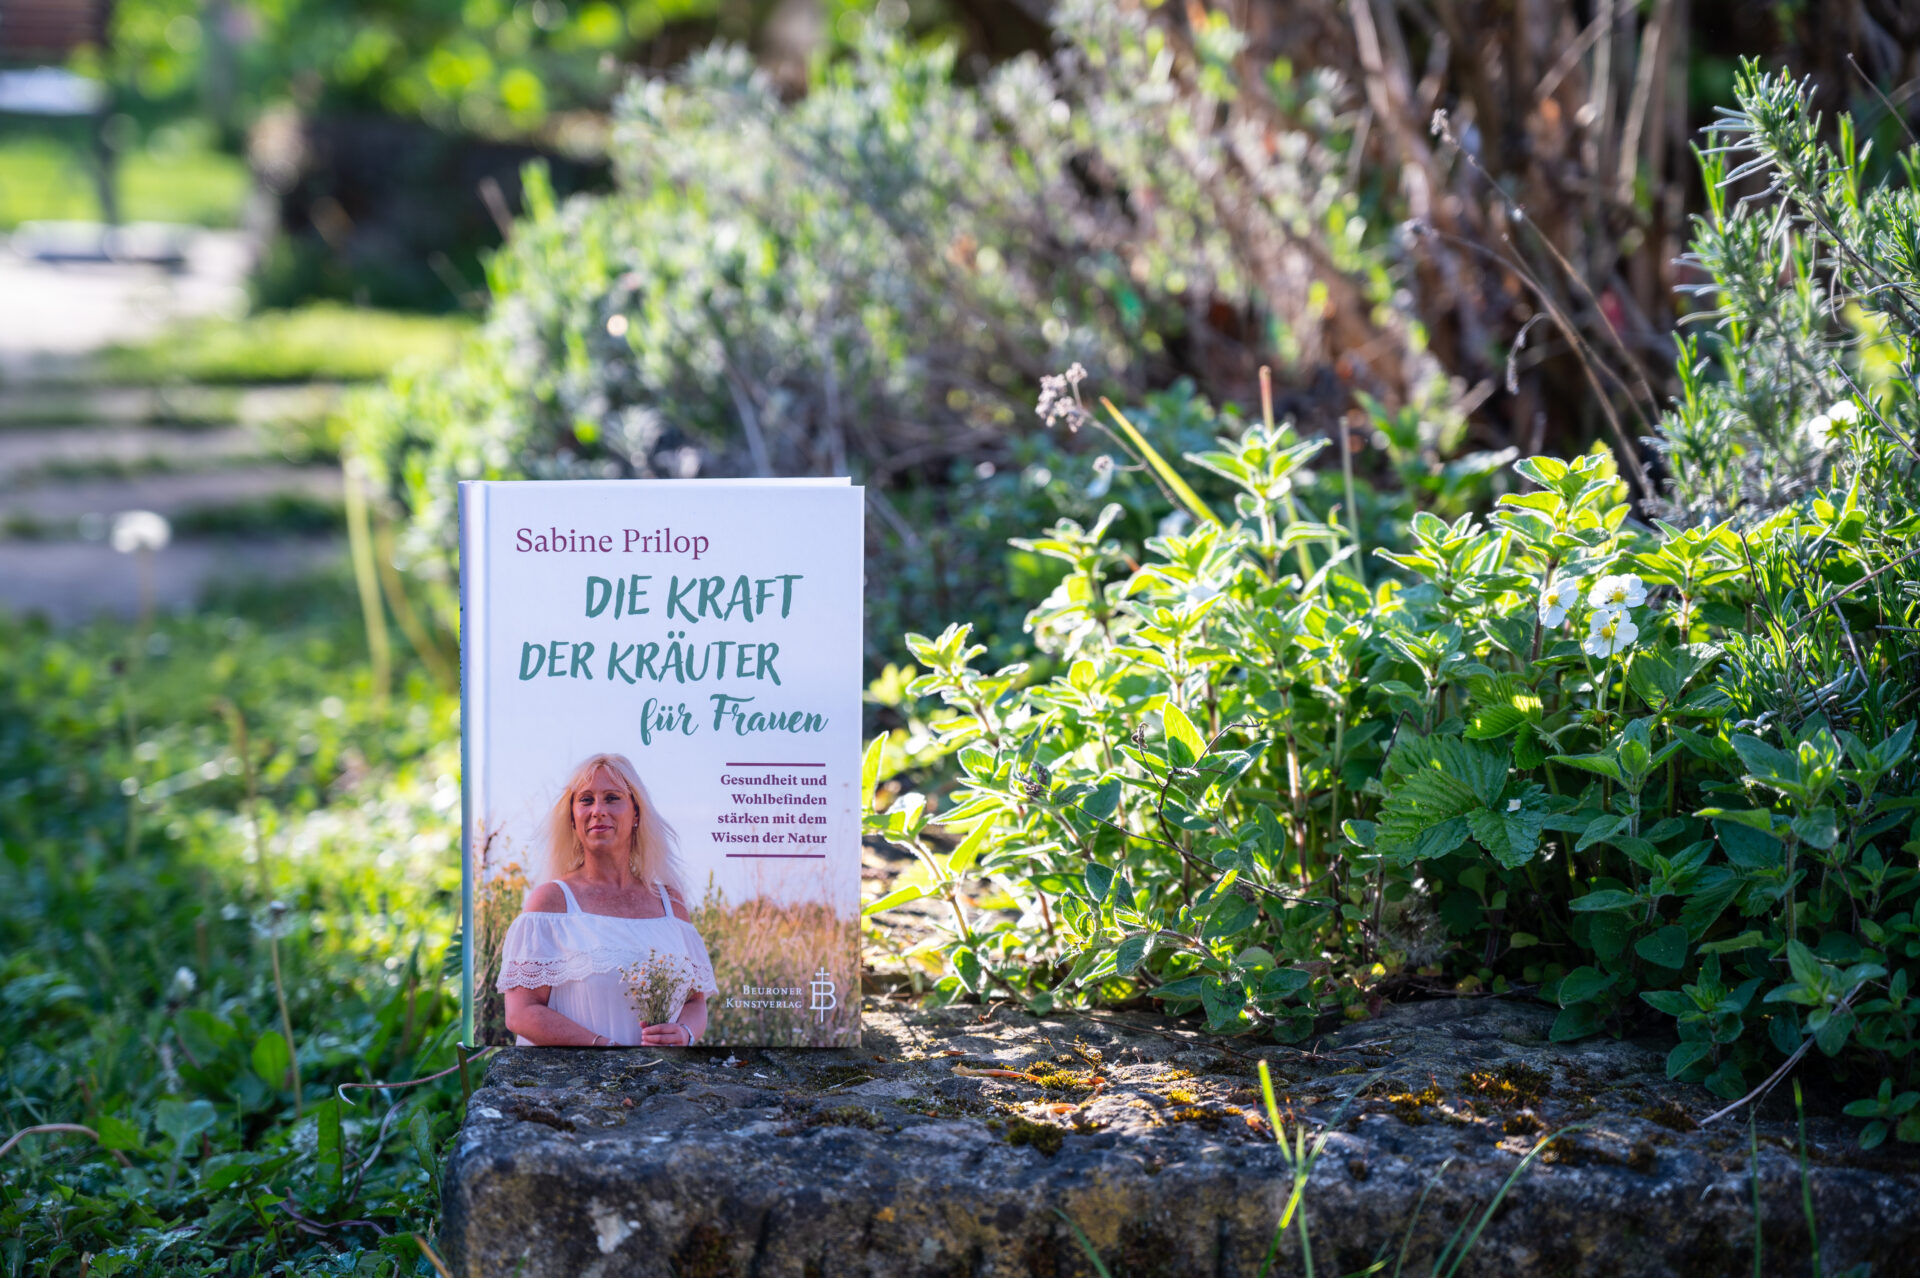 Buch über Kräuter für Frauen liegt im Kräutergarten